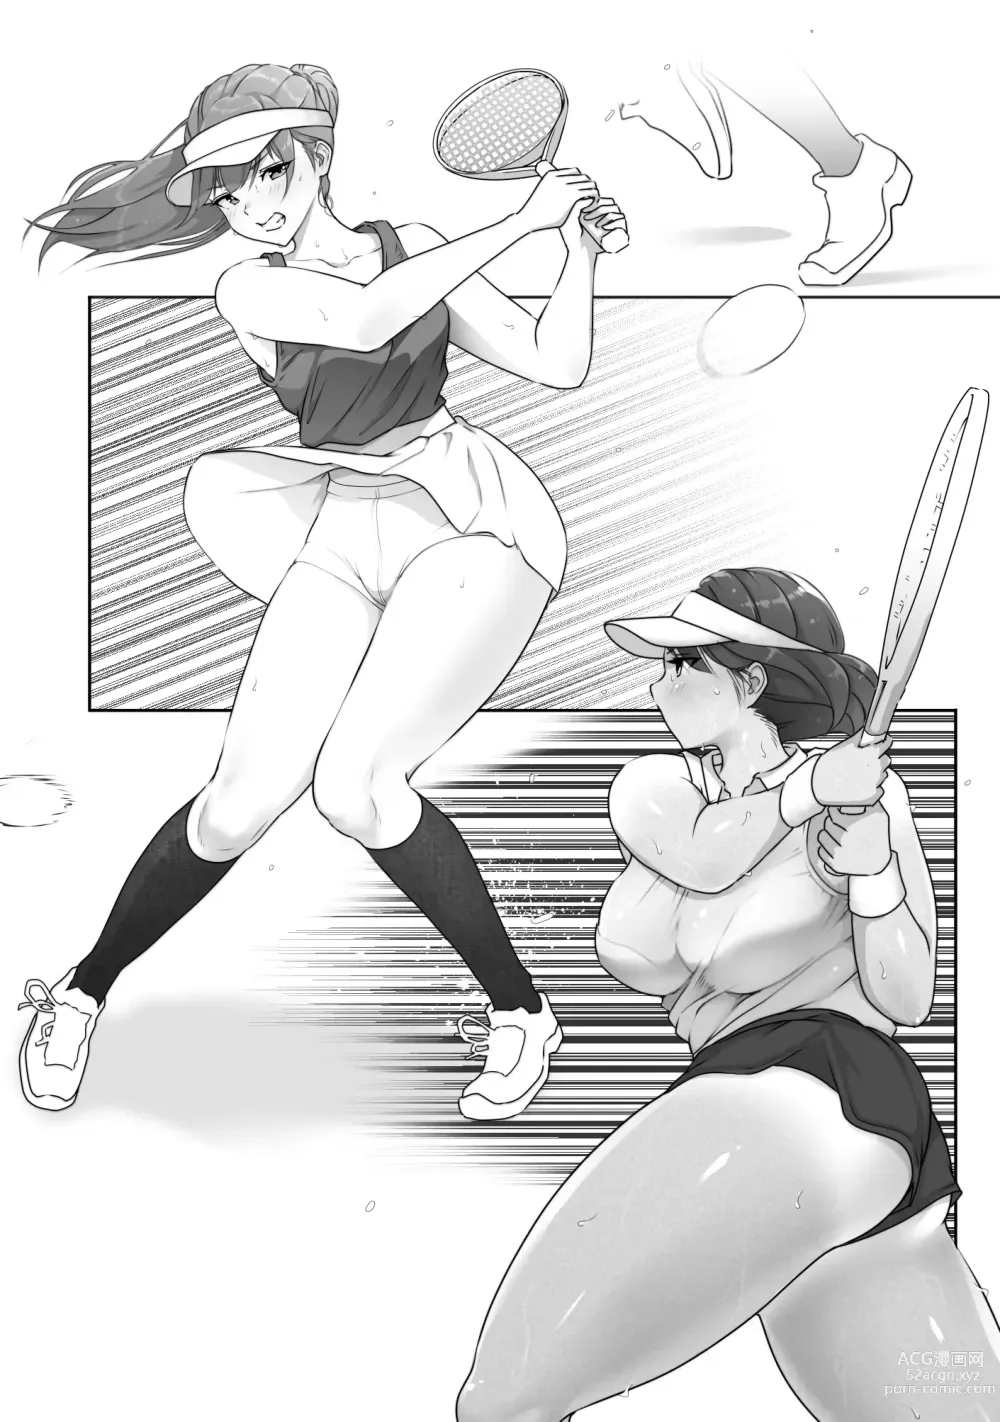 Page 3 of doujinshi 테니스부는 야구부의 손에 떨어졌습니다